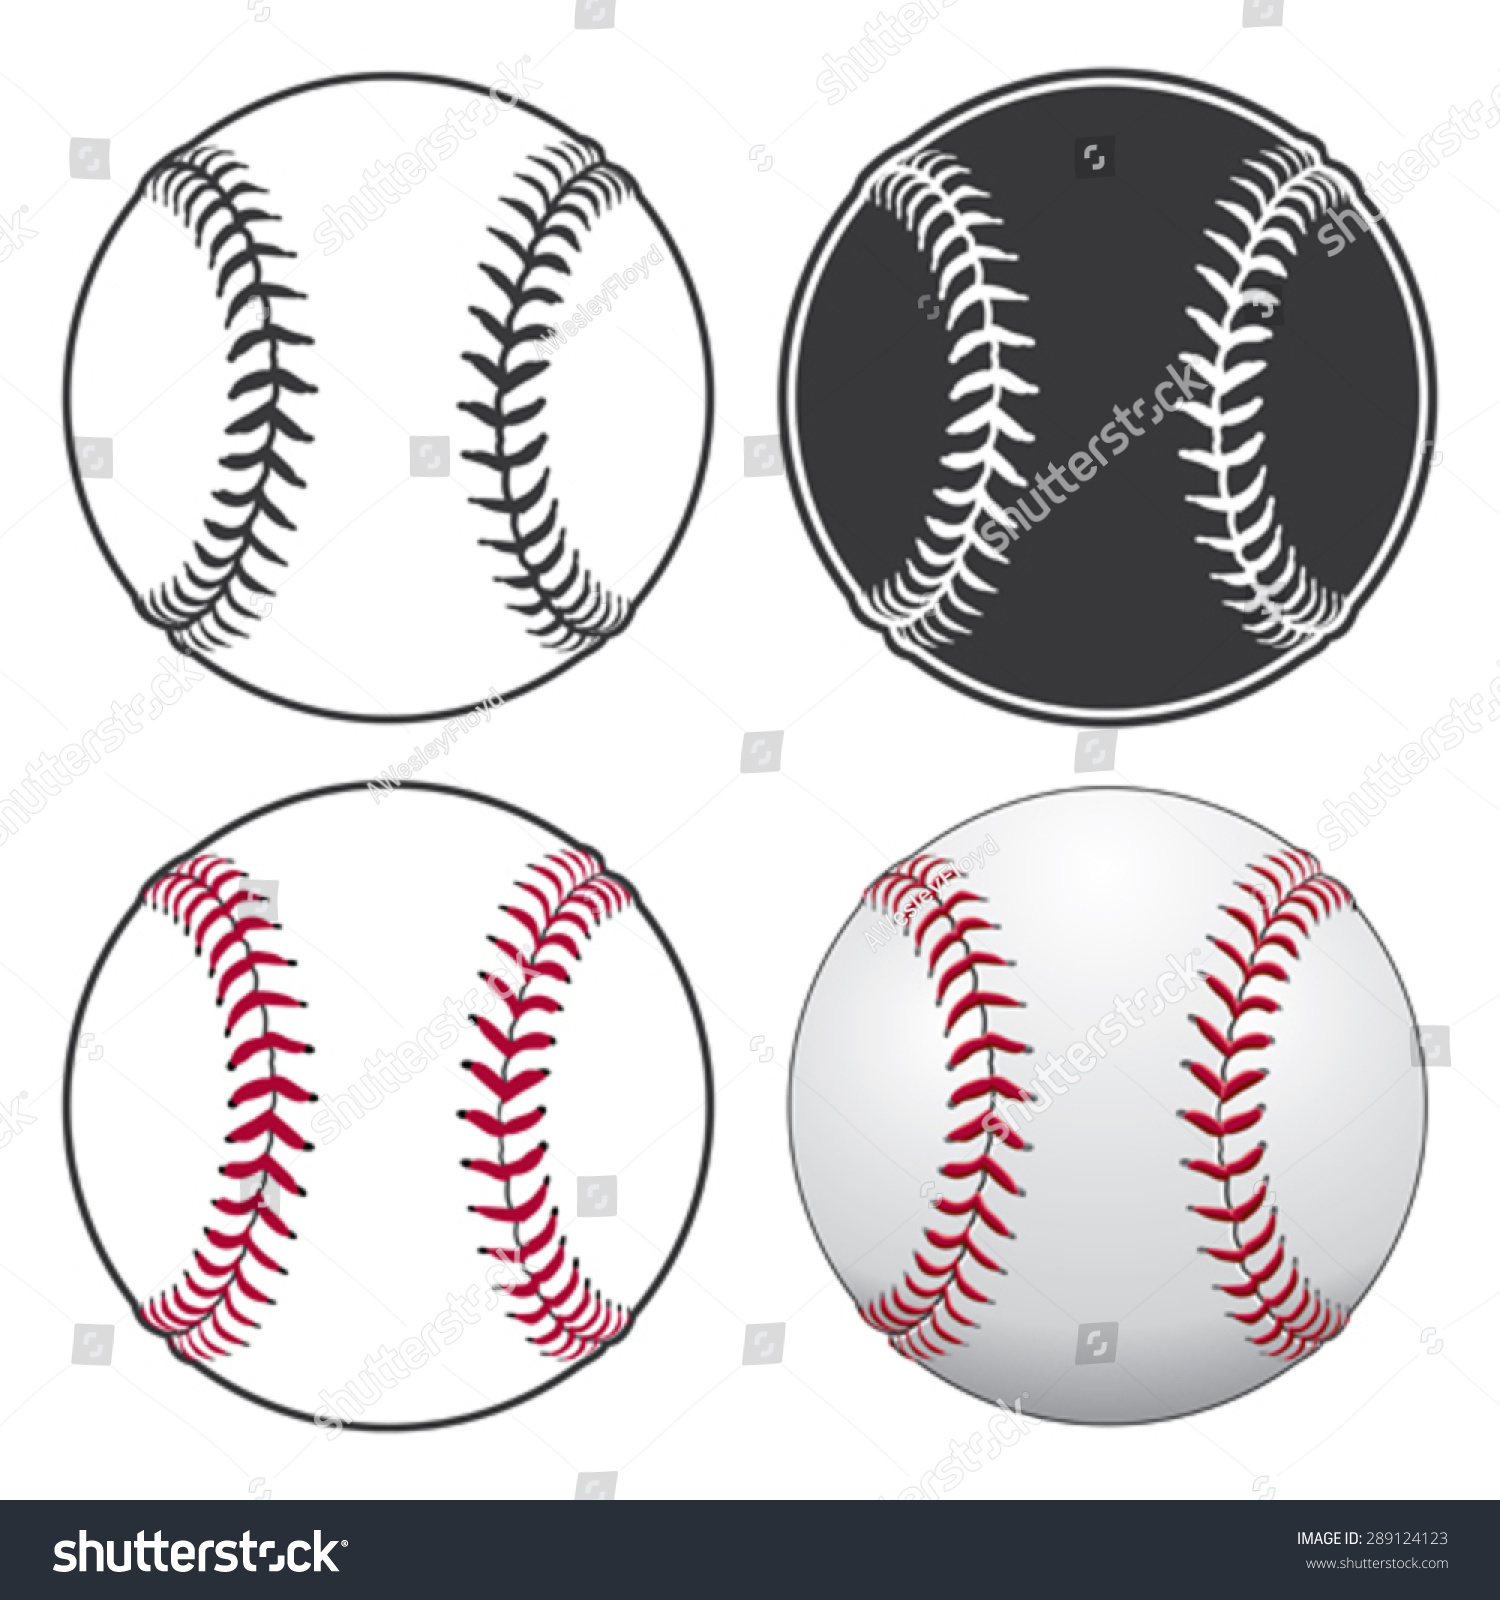 野球は 単純な白黒から複雑なフルカラーまで 4種類のスタイルで描かれたイラストです のベクター画像素材 ロイヤリティフリー